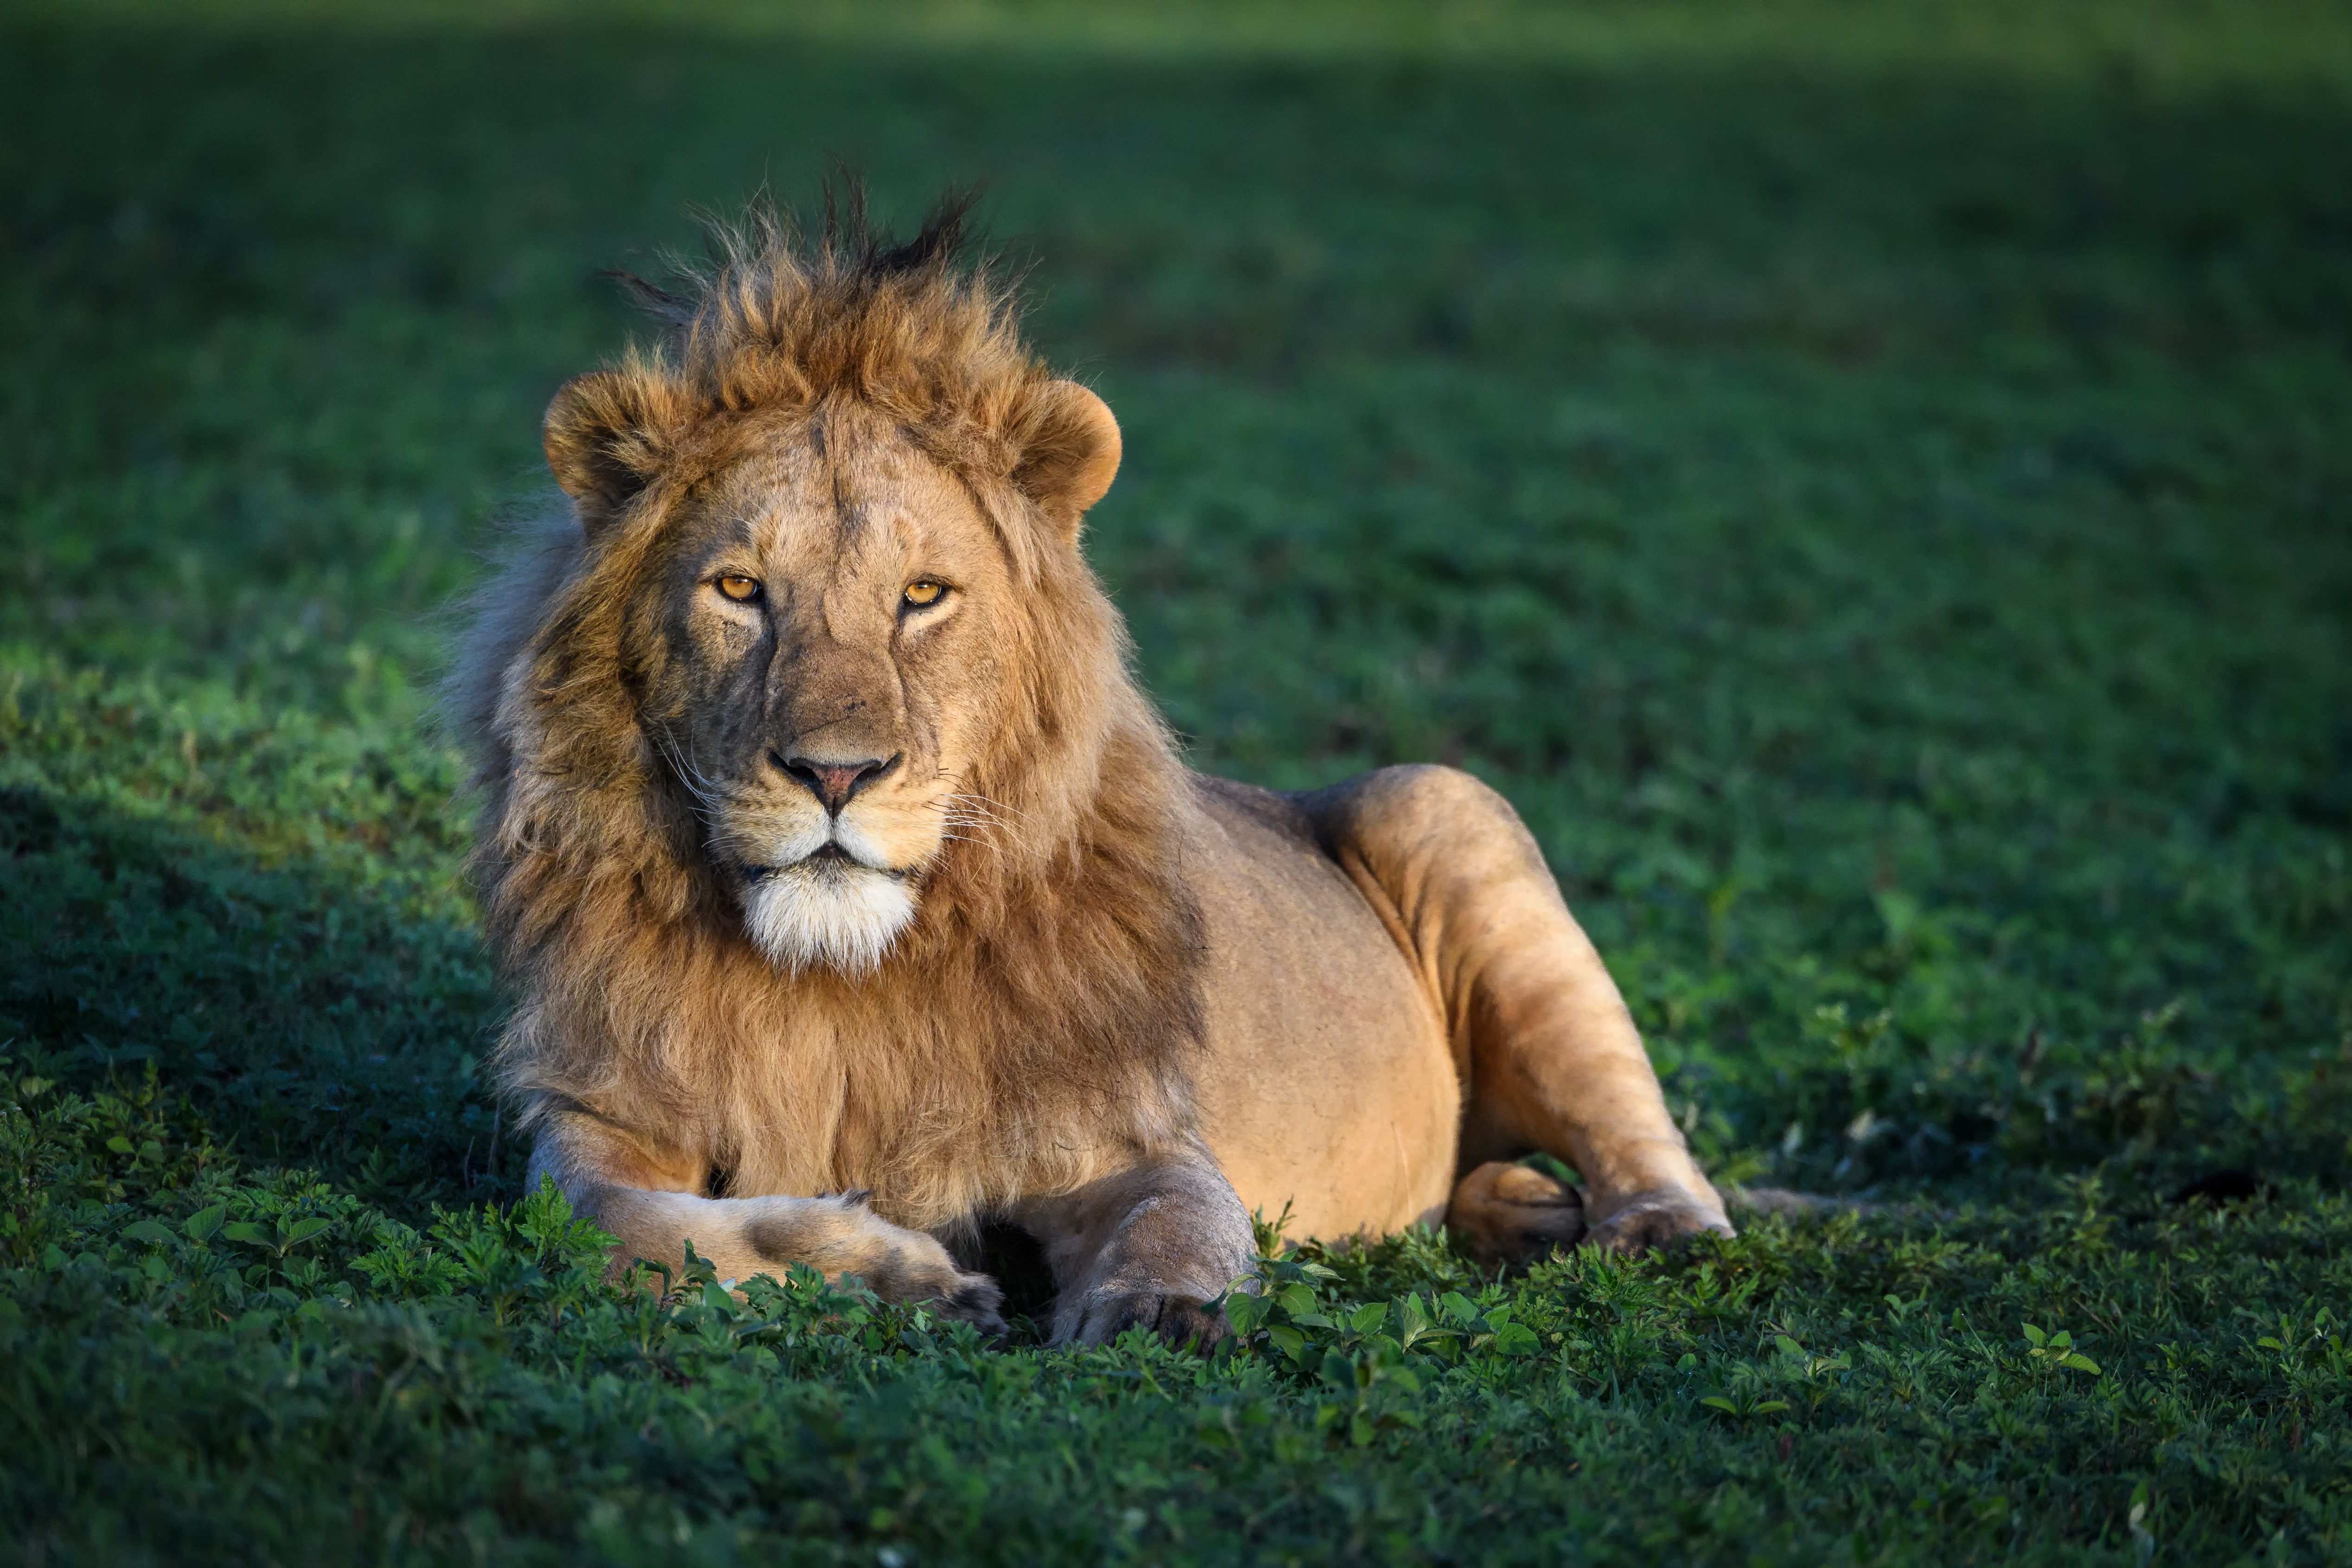 Tansania lion